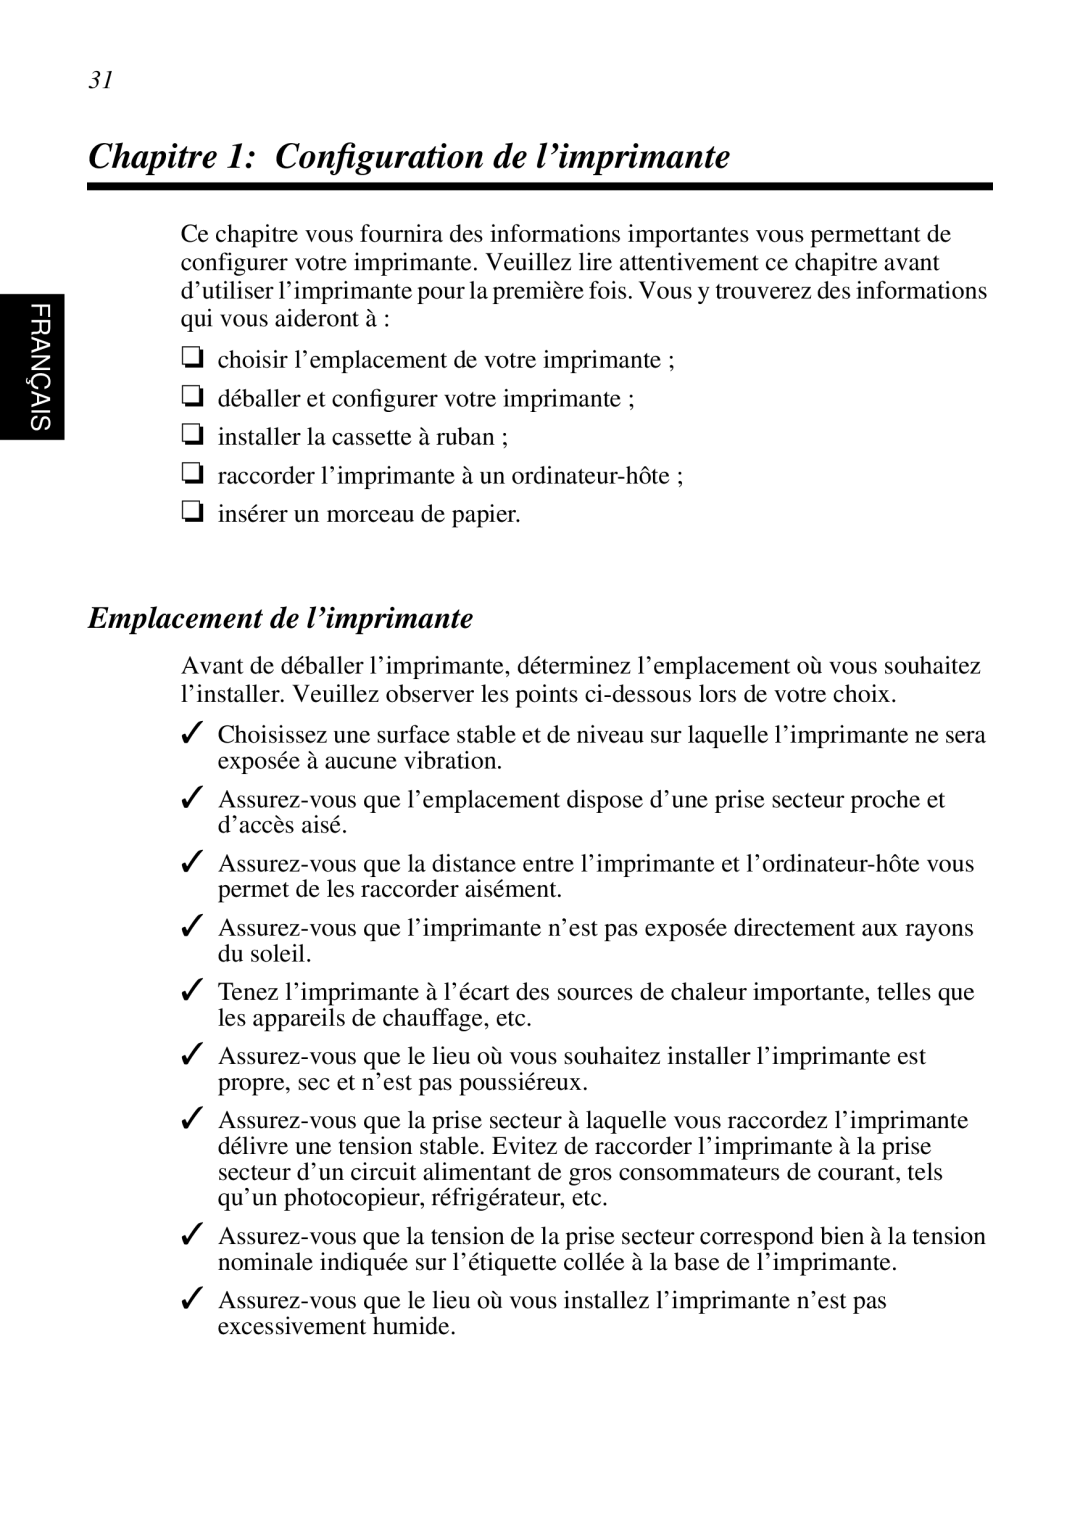 Star Micronics SP298 user manual Chapitre 1 Conﬁguration de l’imprimante, Emplacement de l’imprimante, Français 